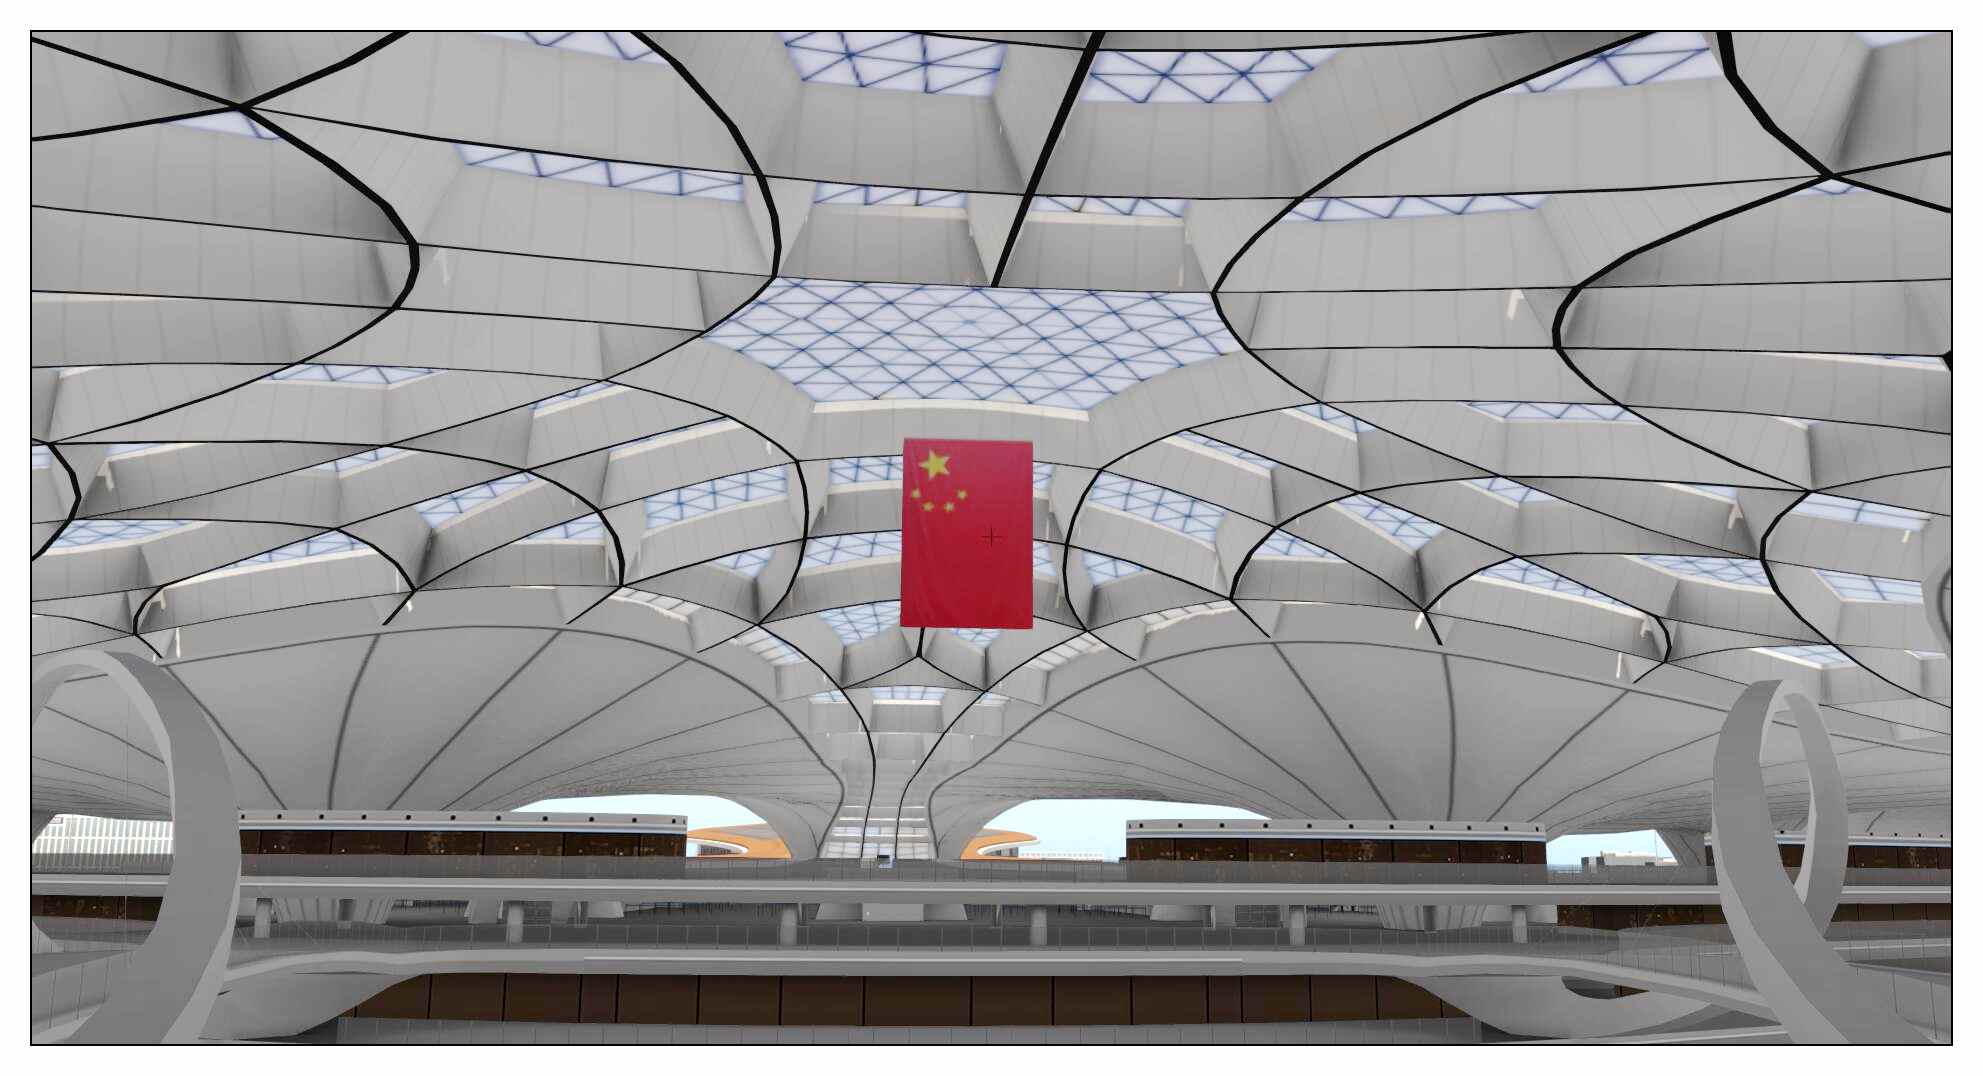 【X-Plane】ZBAD北京大兴国际机场-正式发布-7988 